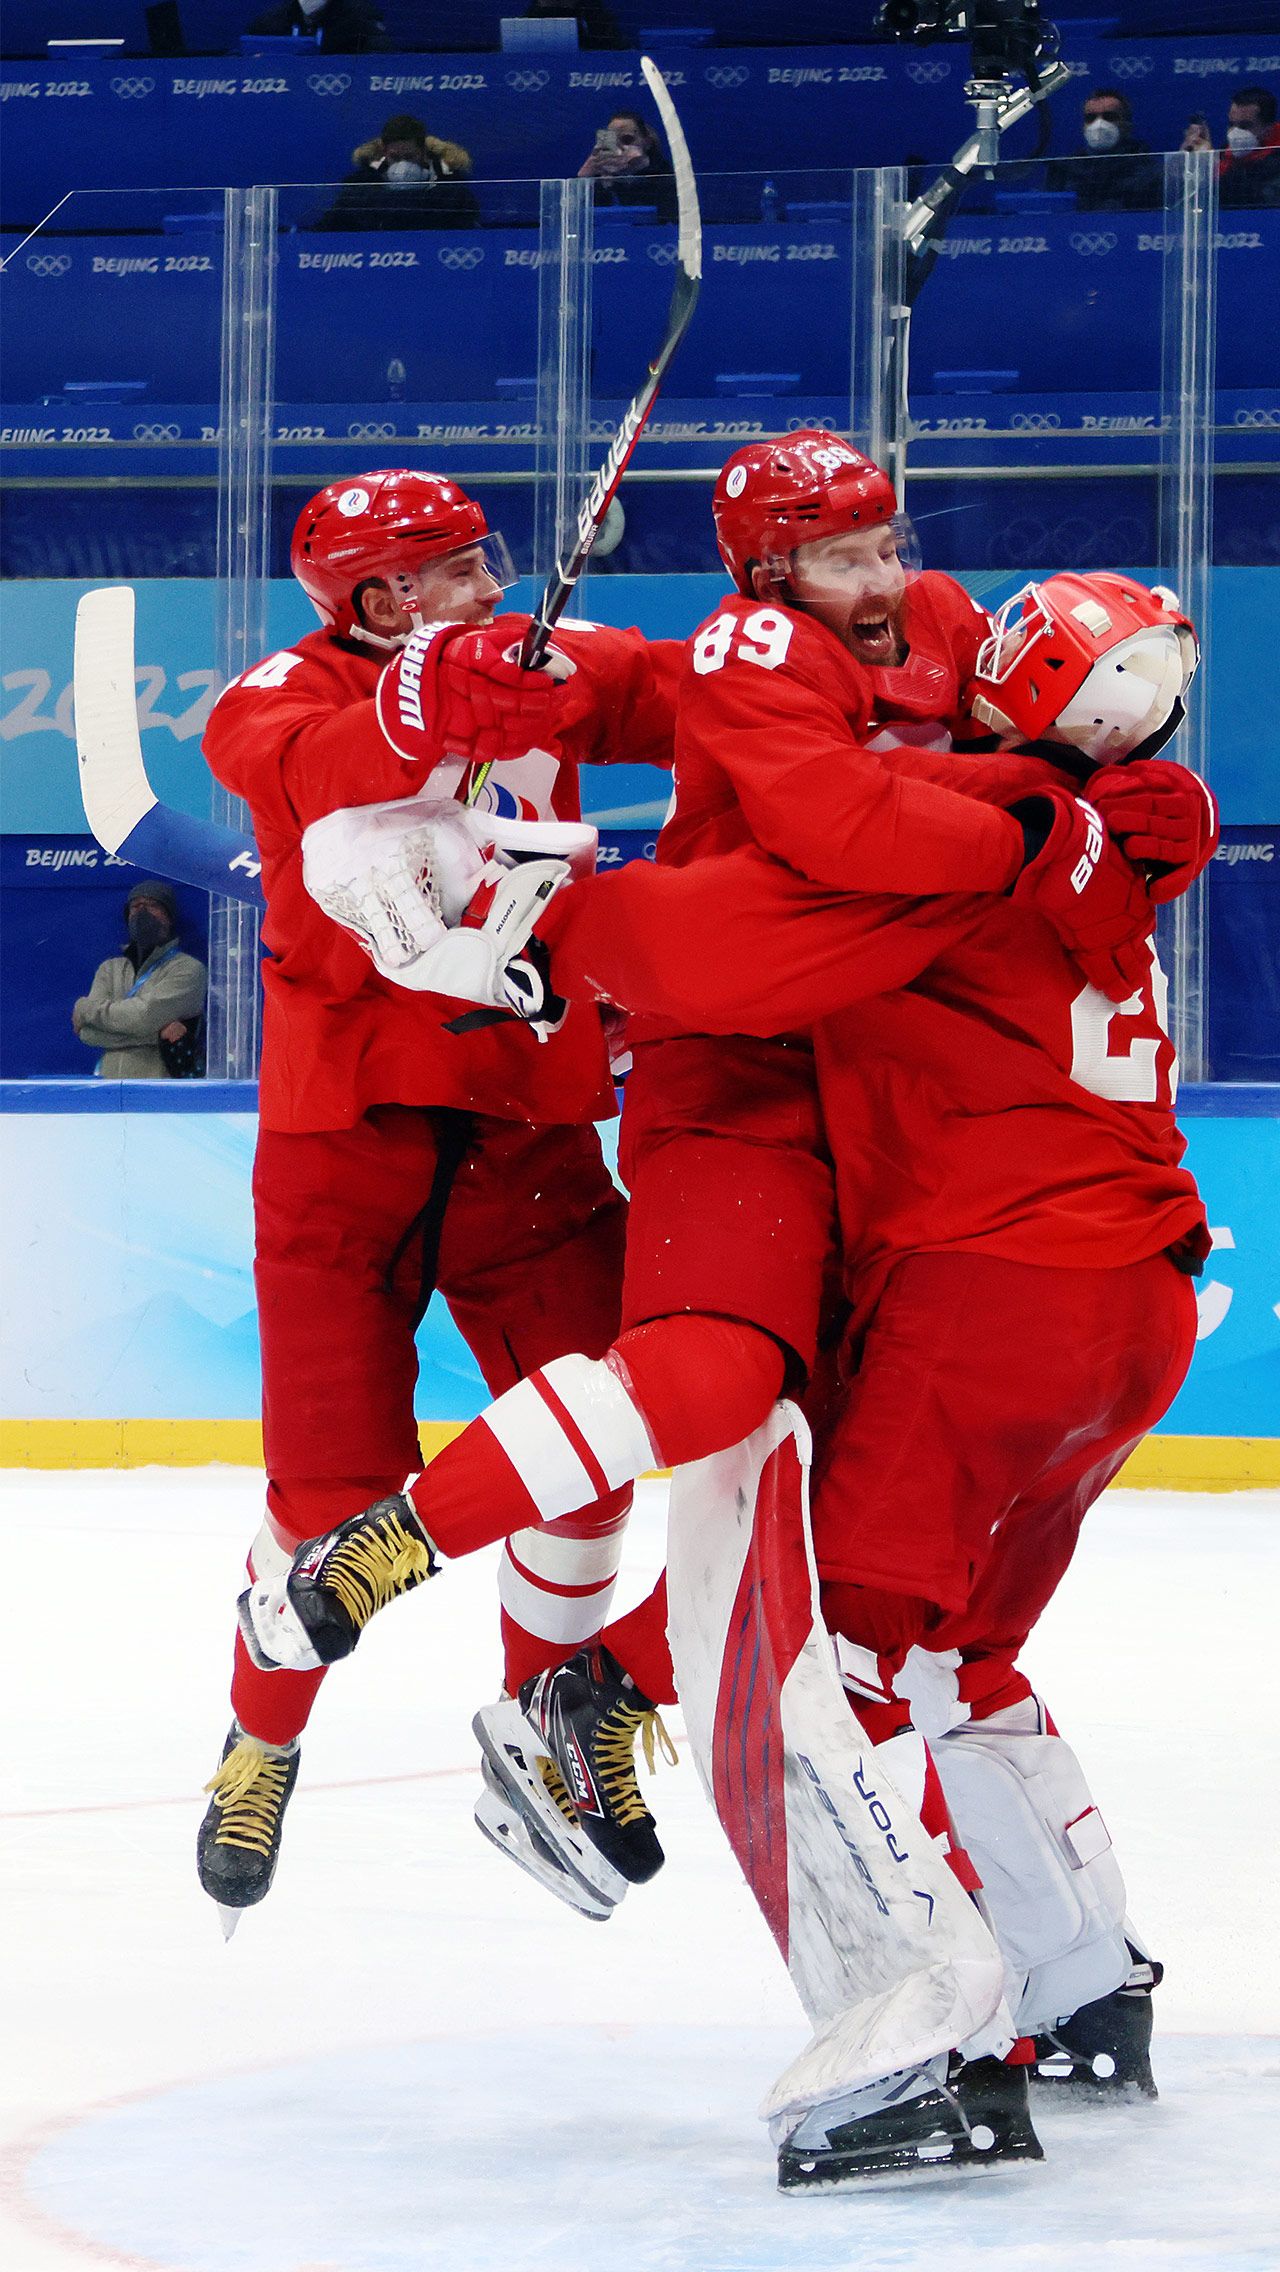 ⏰ 7:10: Хоккей — финал Россия — Финляндия